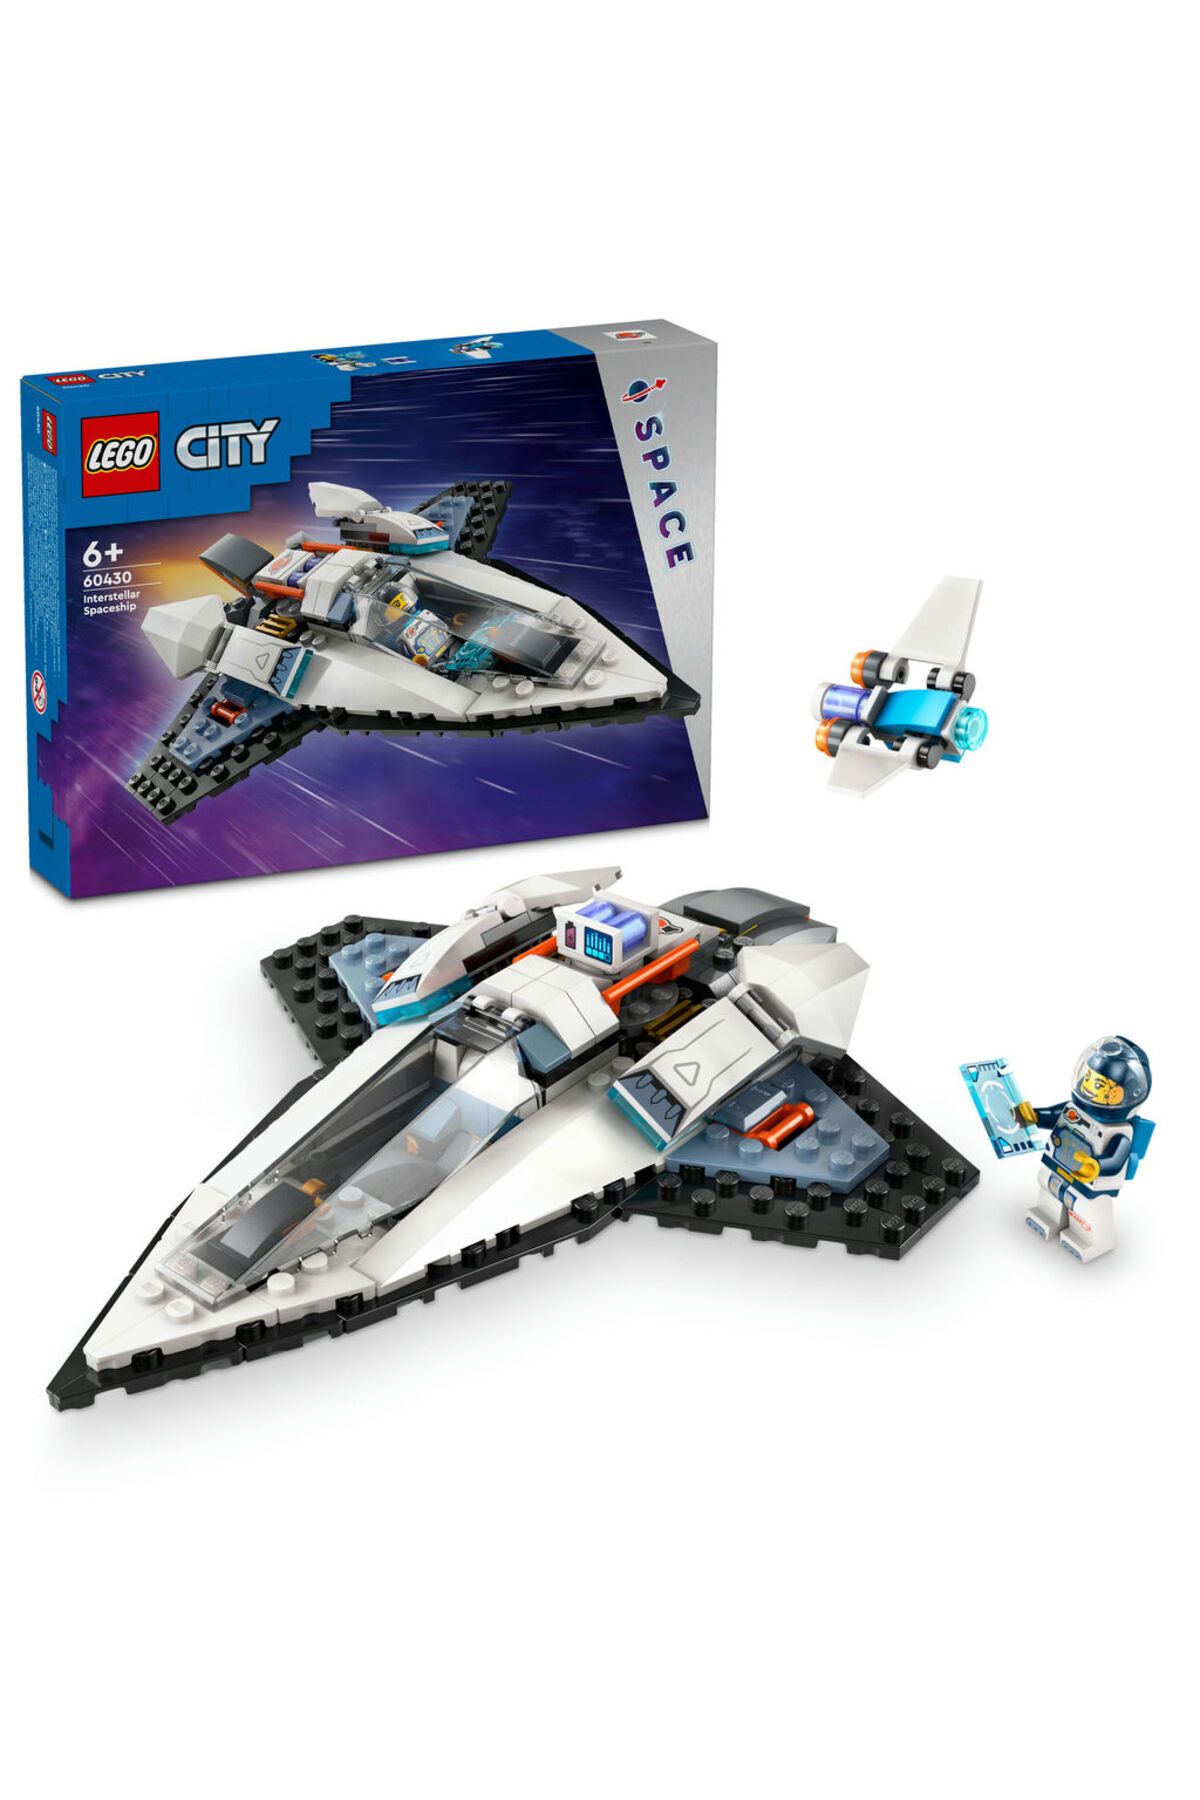 LEGO ® City Yıldızlararası Uzay Gemisi 60430  - 6 Yaş ve Üzeri İçin Yapım Seti (240 Parça)